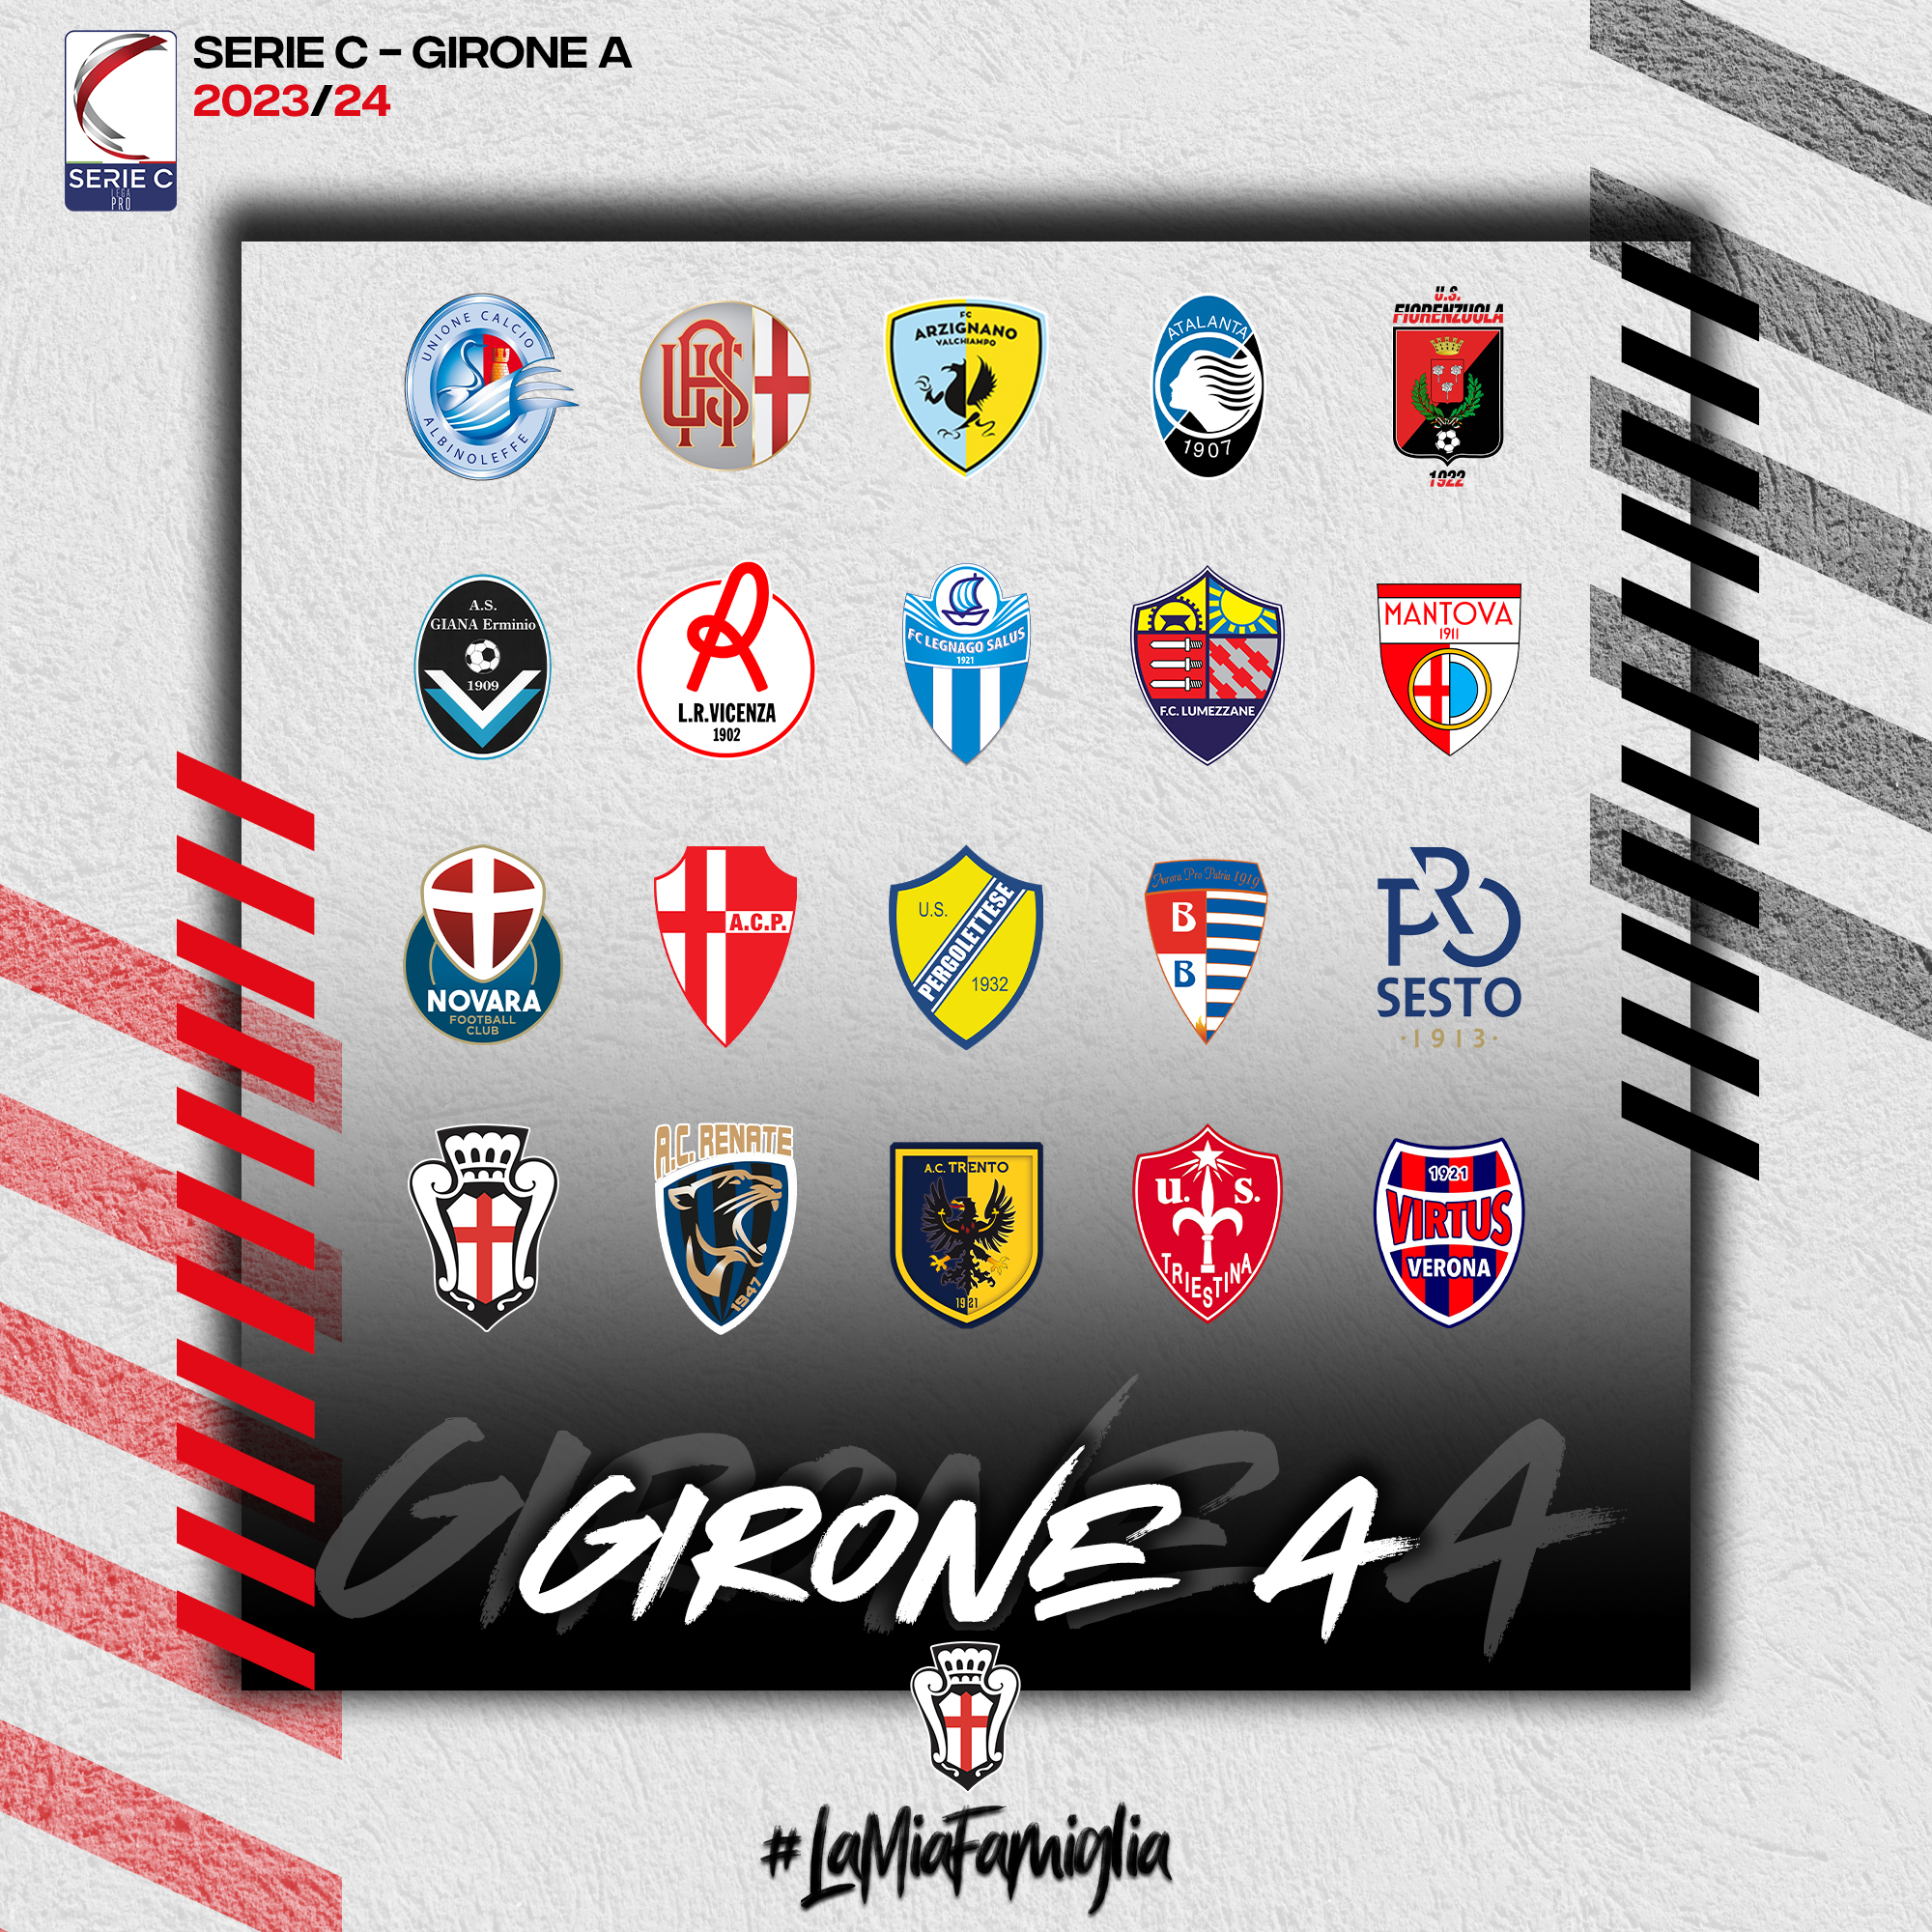 Ufficializzata la composizione dei Gironi per la stagione 2023/24